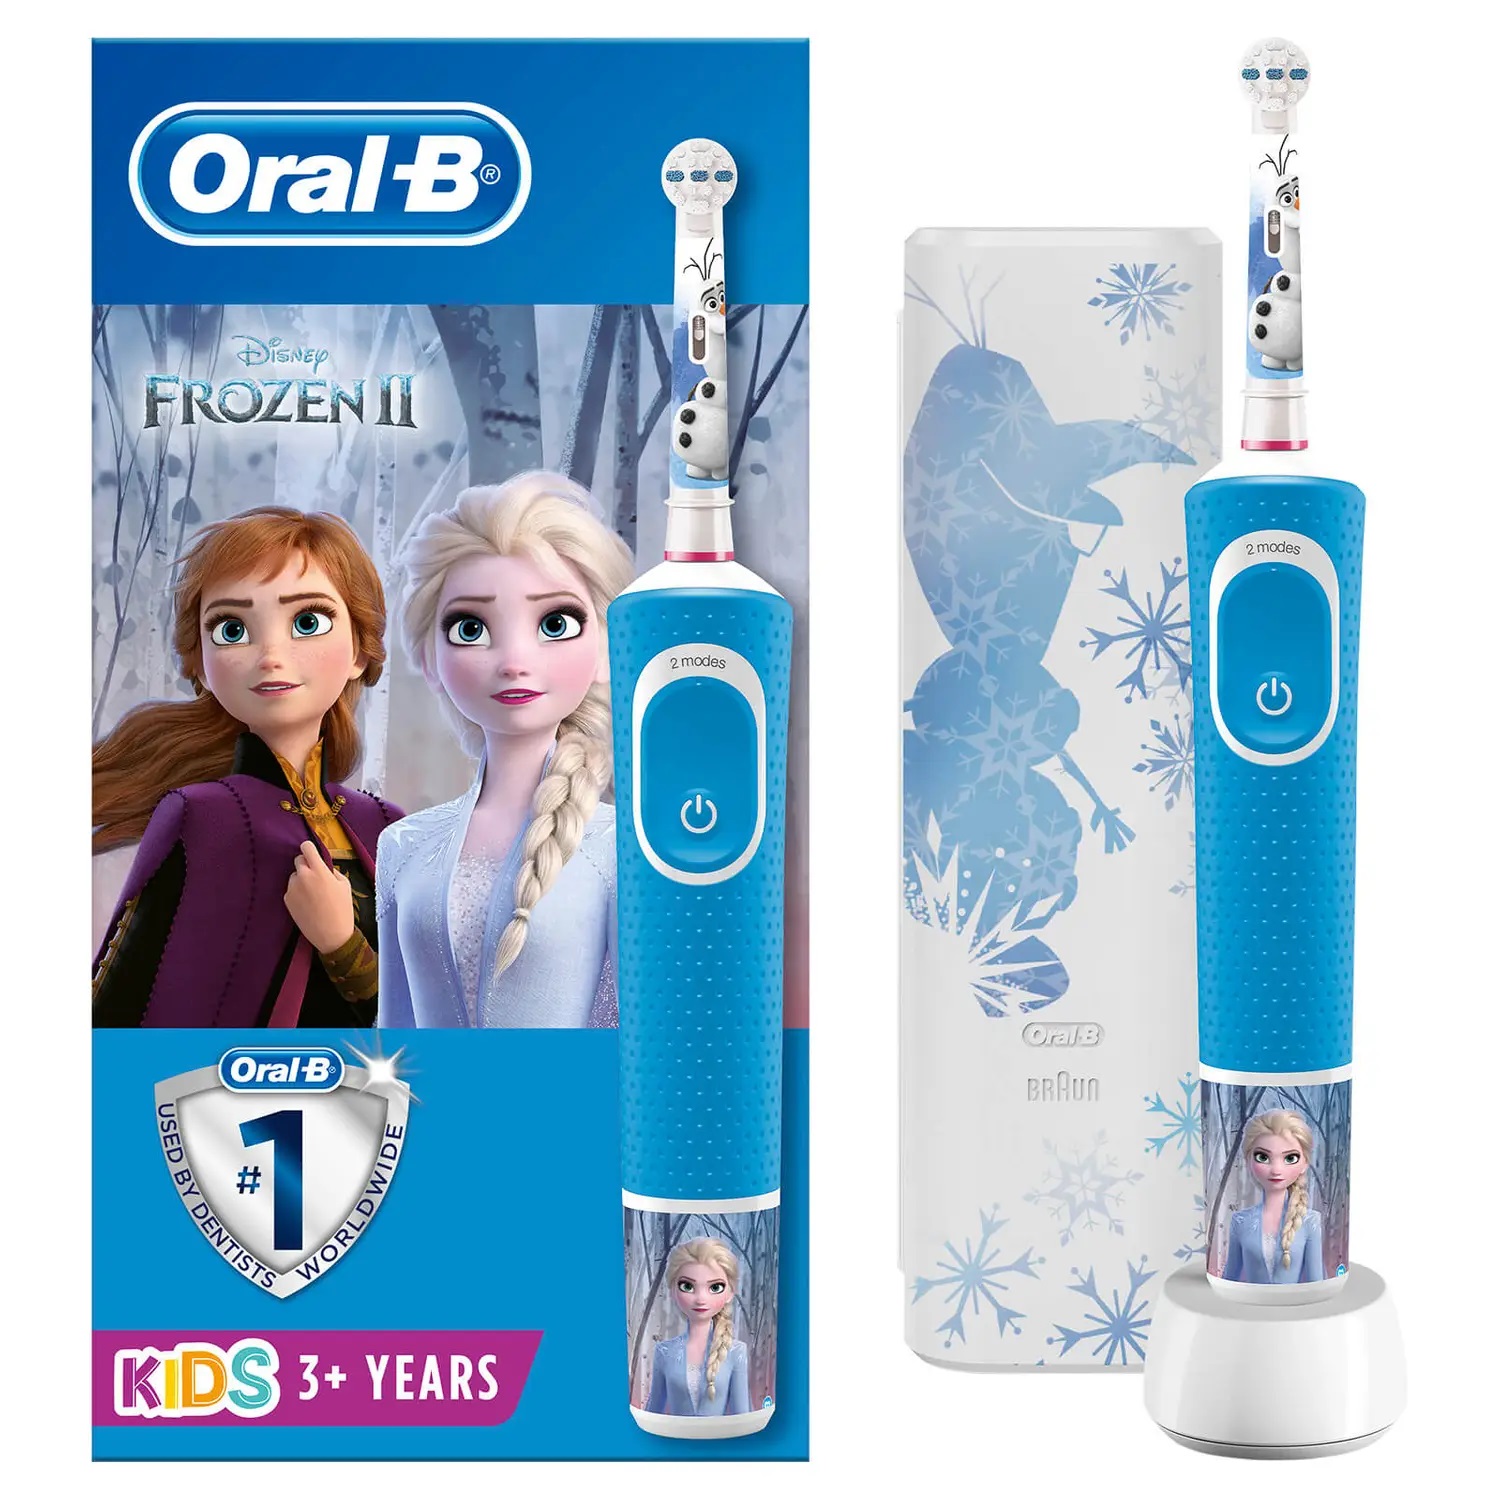 Bijbel Vroeg maandag Oral-B Kids elektrische tandenborstel Frozen met kopen - Pazzox